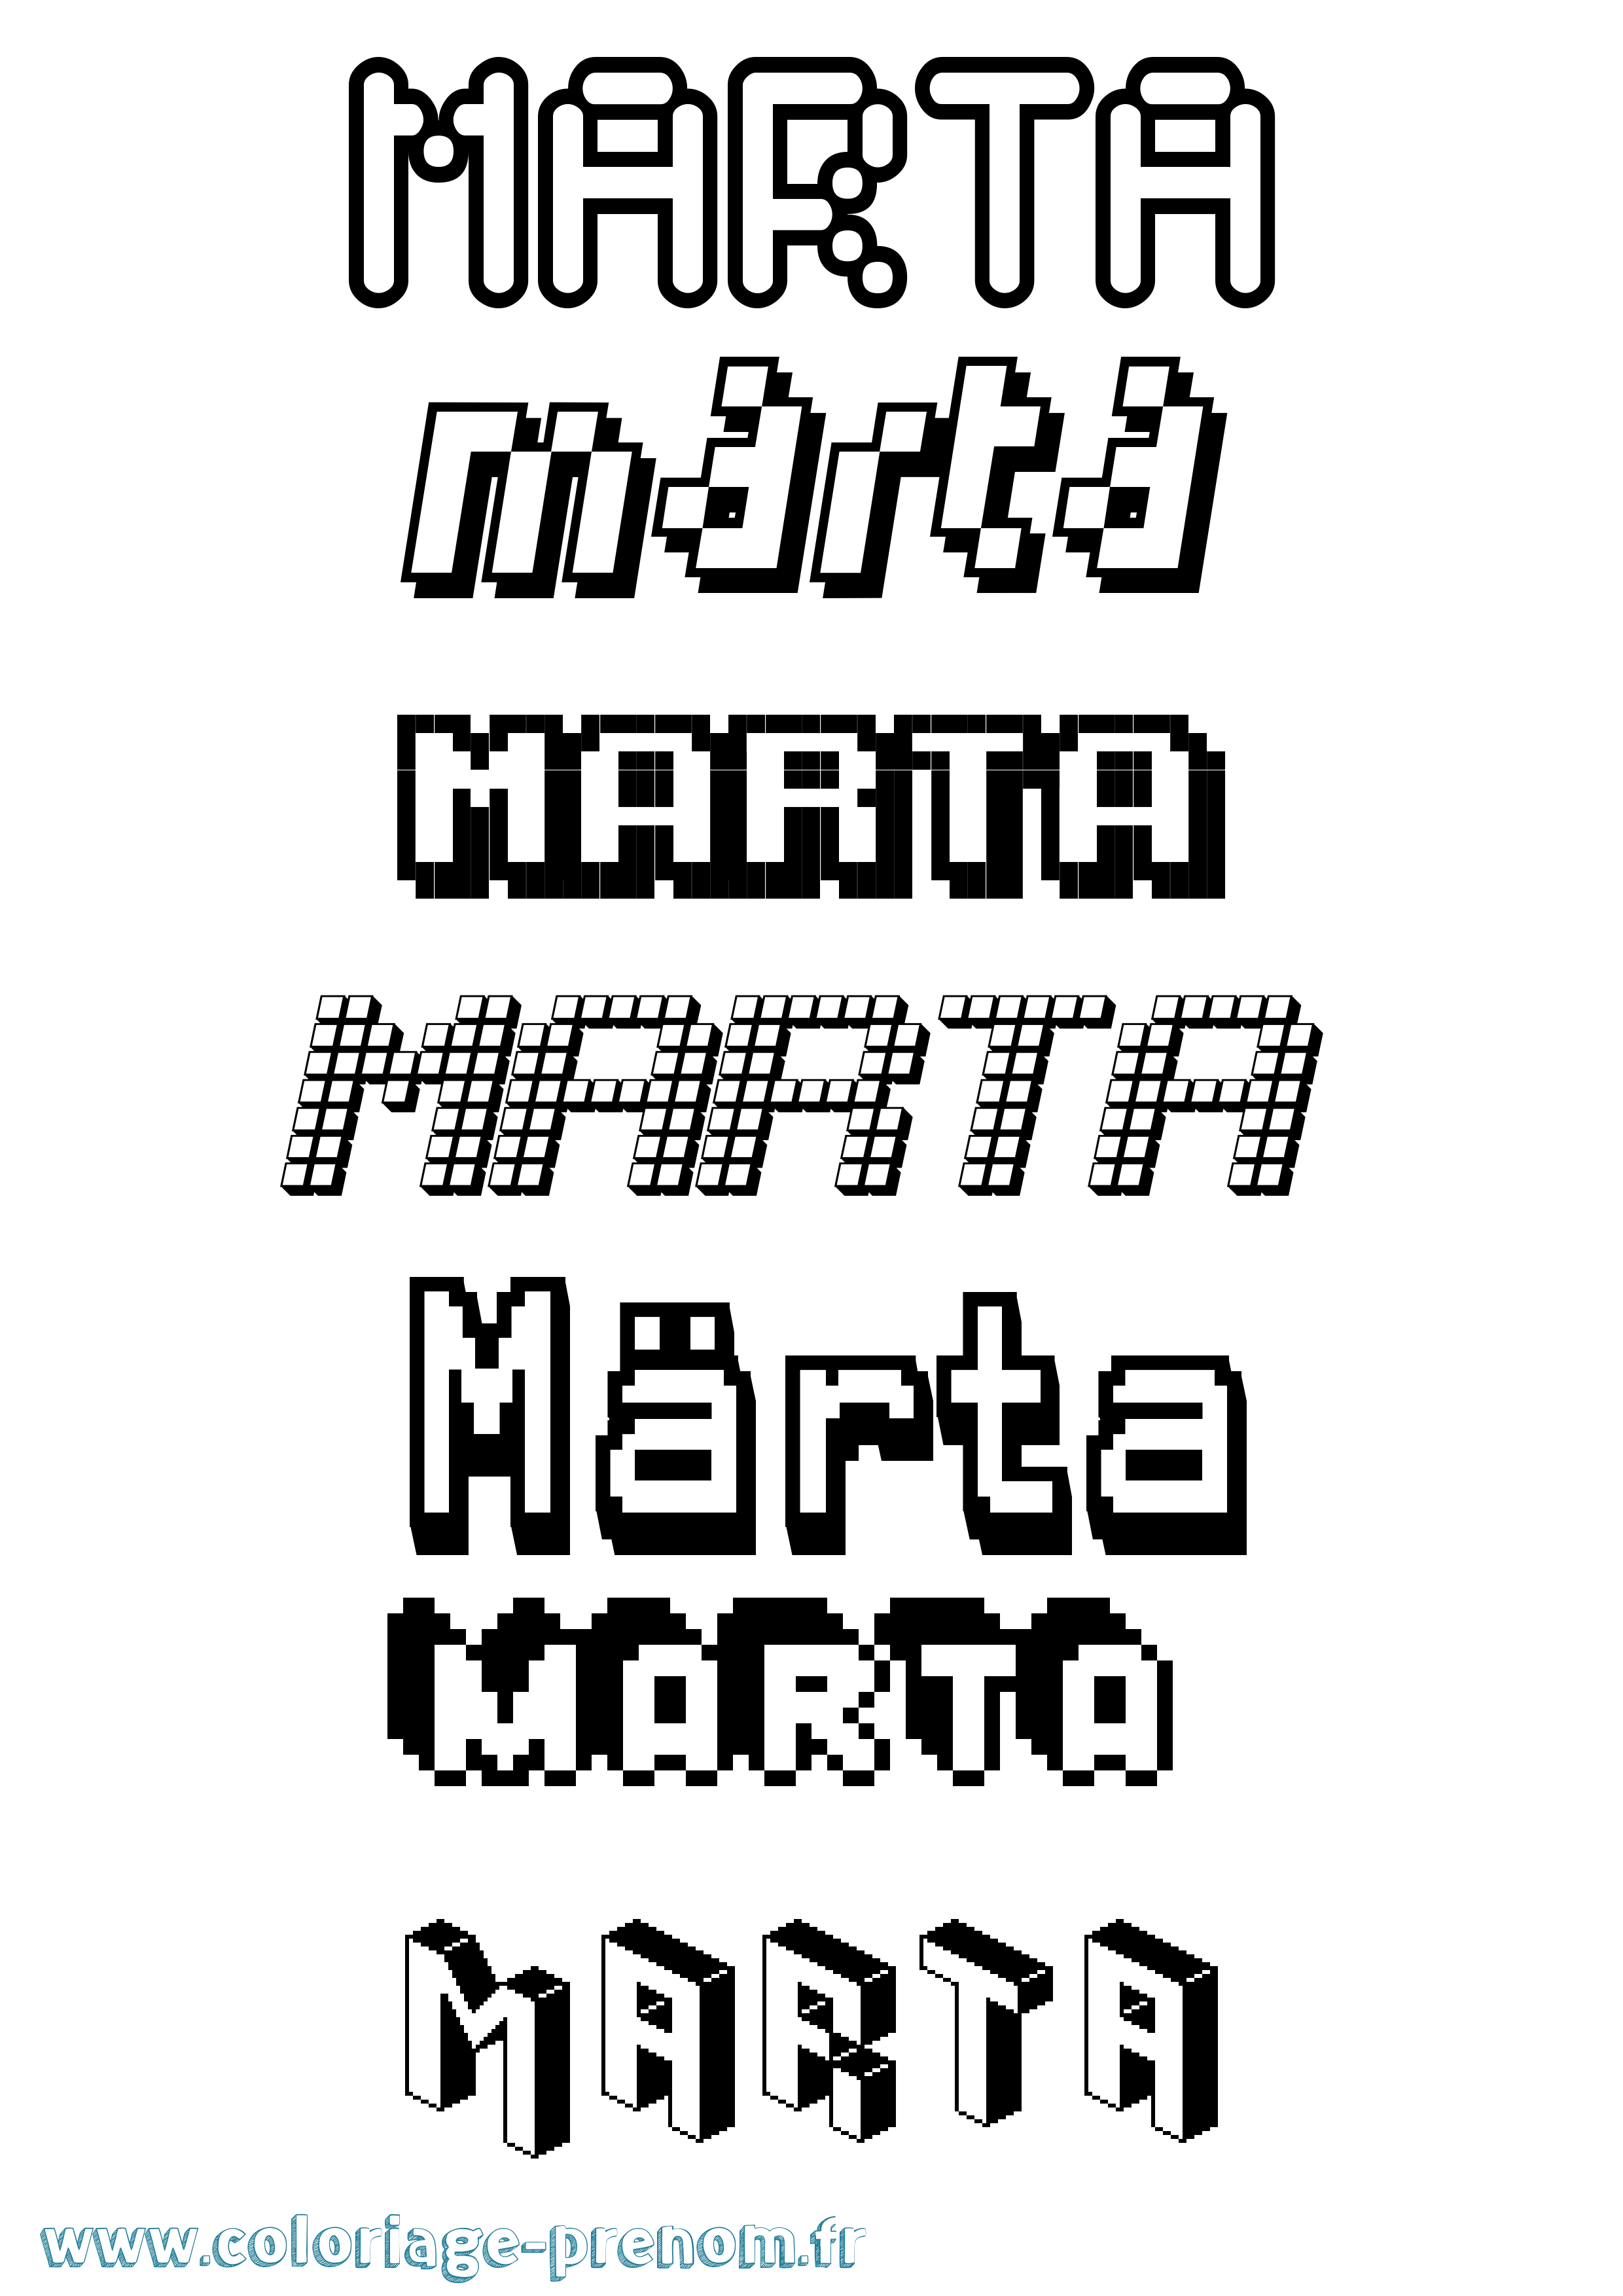 Coloriage prénom Märta Pixel